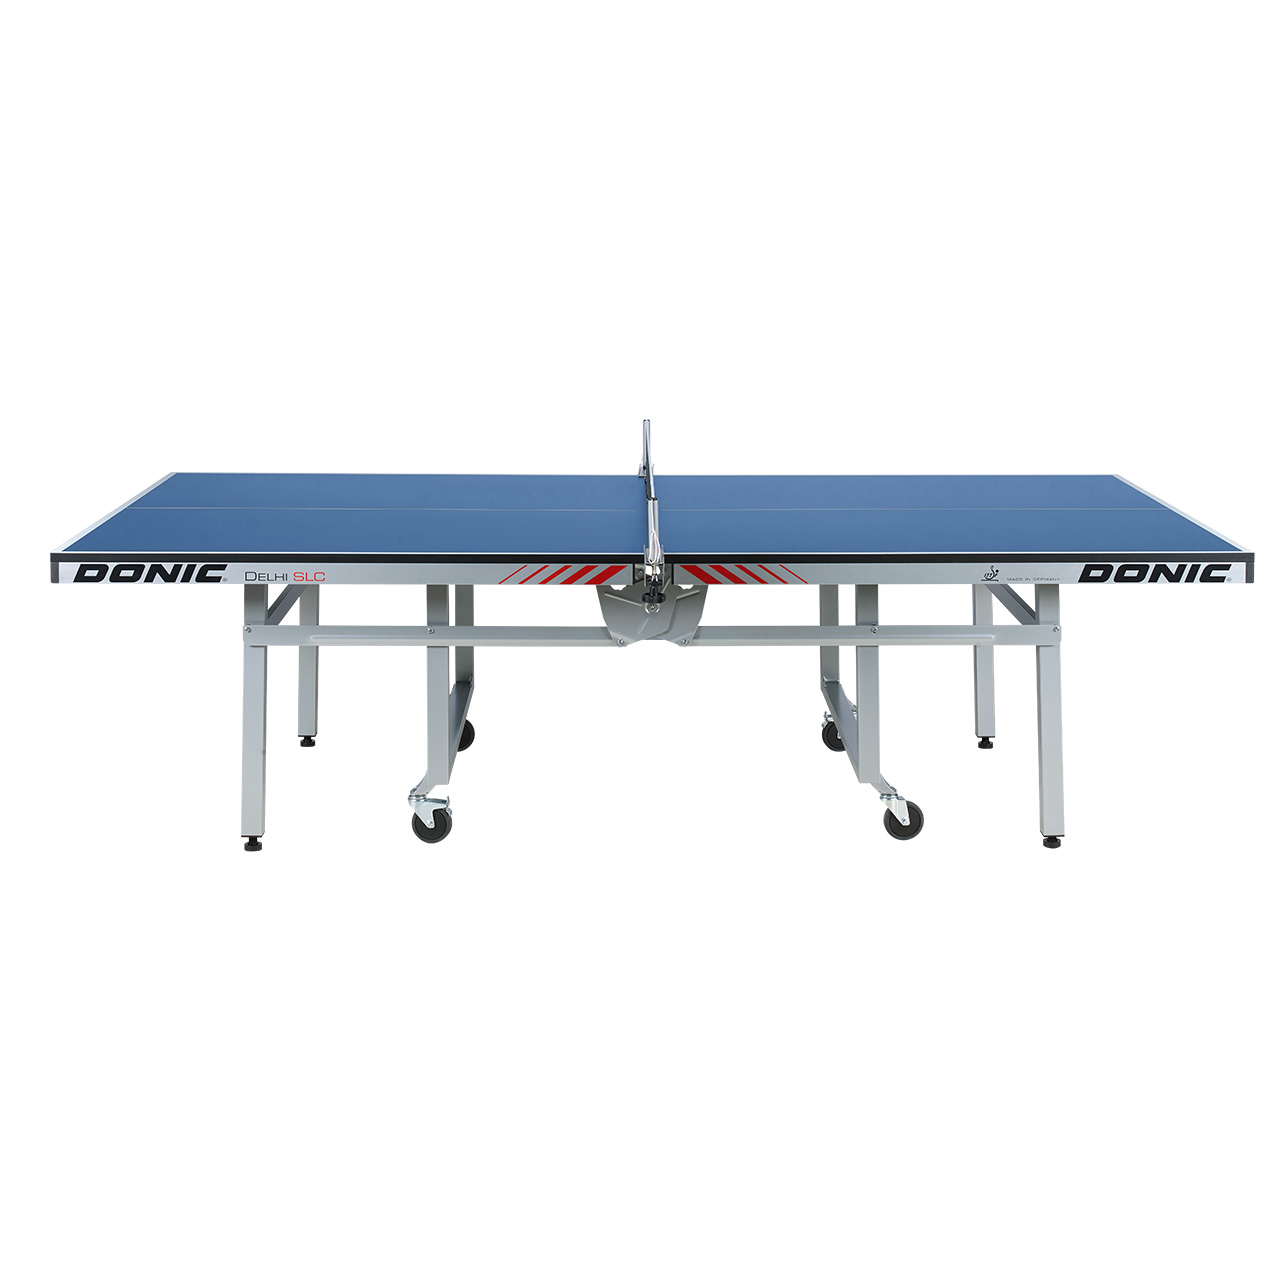 Tischtennis-Tisch DONIC Dehli SLC, blau, Seitenansicht